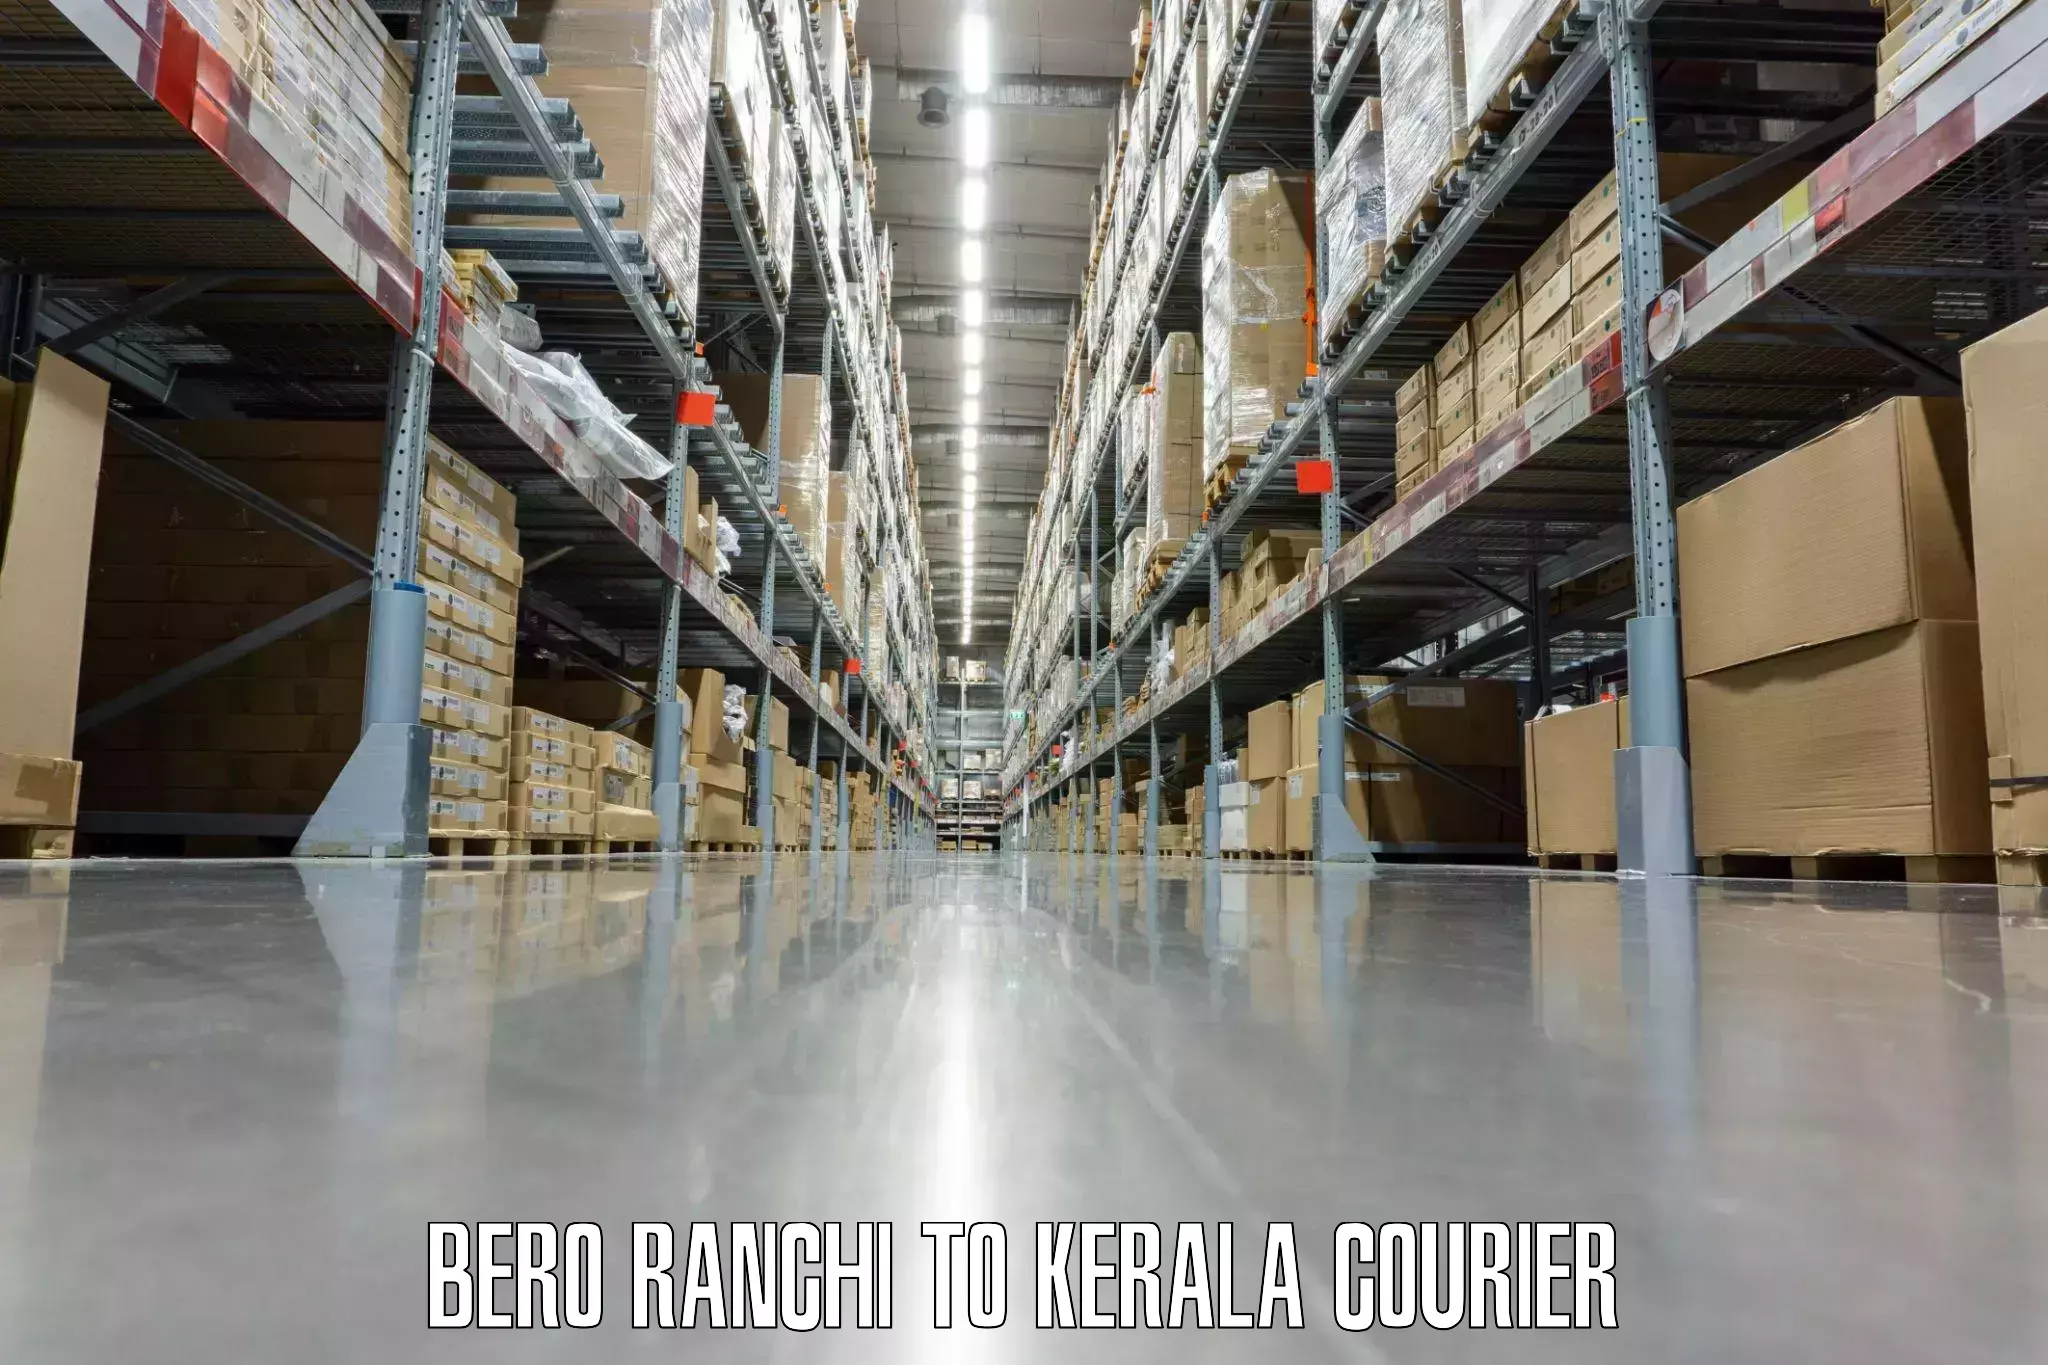 Weekend baggage shipping Bero Ranchi to Cochin Port Kochi